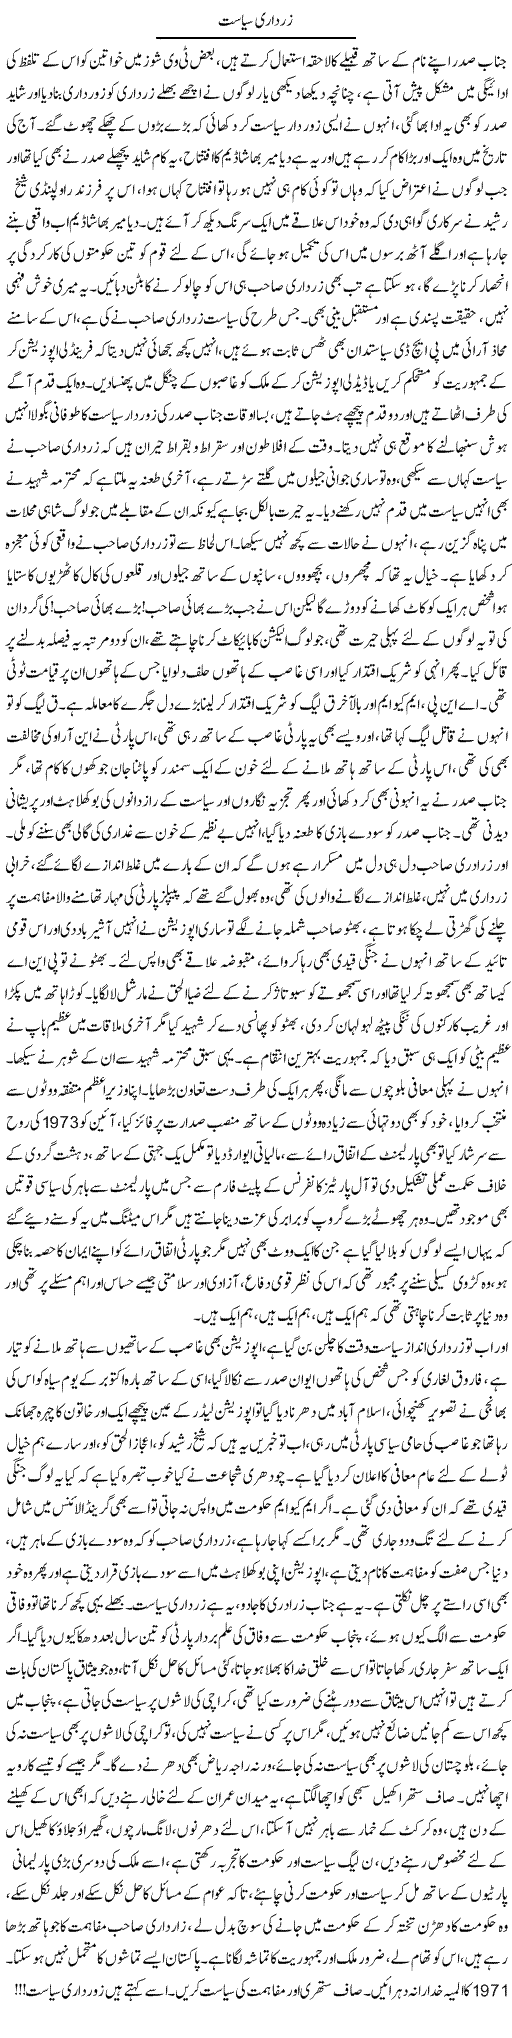 Zardari Politics Express Column Asadullah Ghalib 18 October 2011